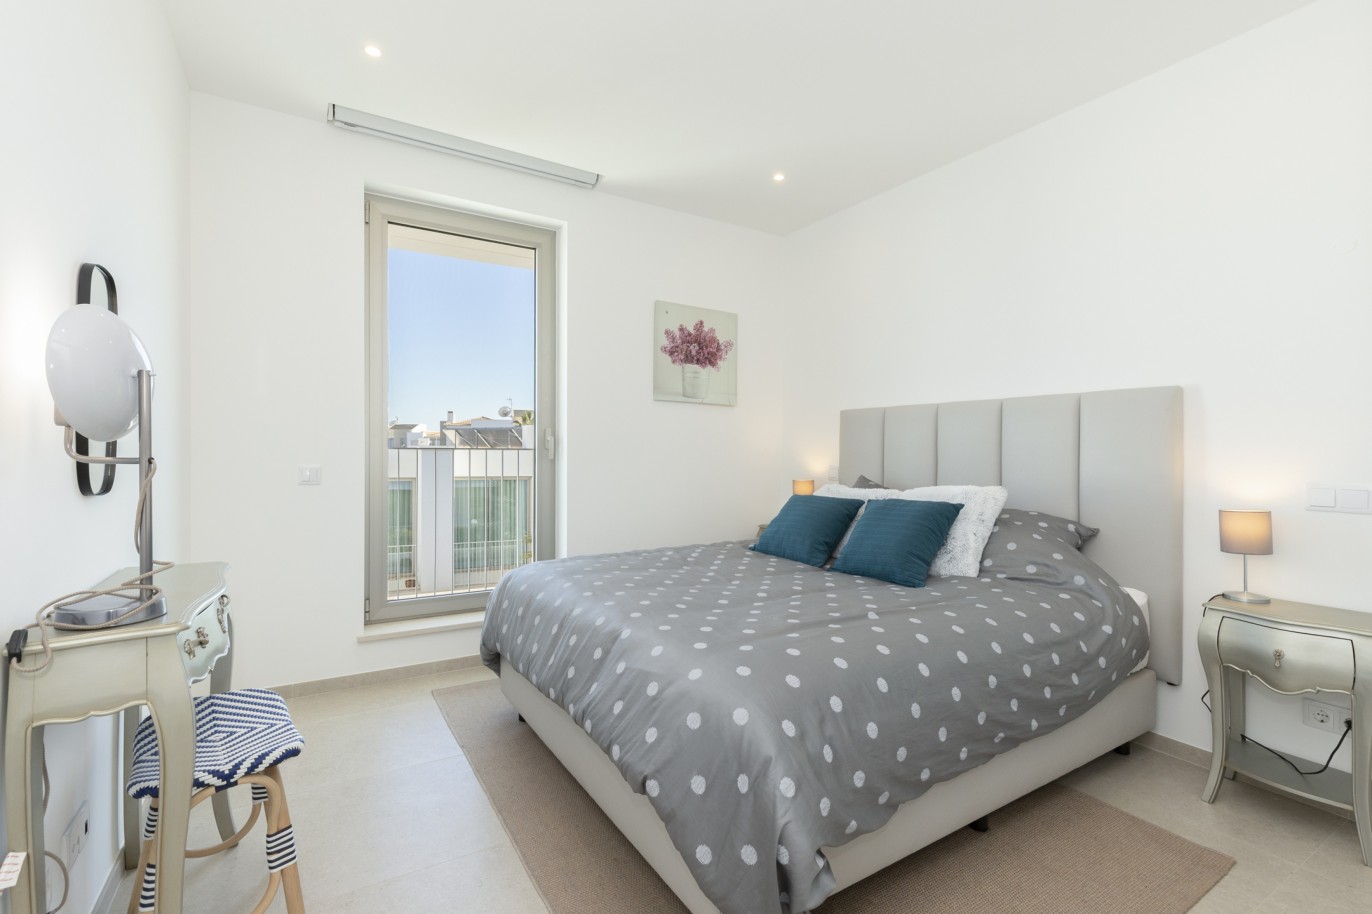 3 bedroom townhouse in private condominium, for sale, in Lagos, Algarve_217634